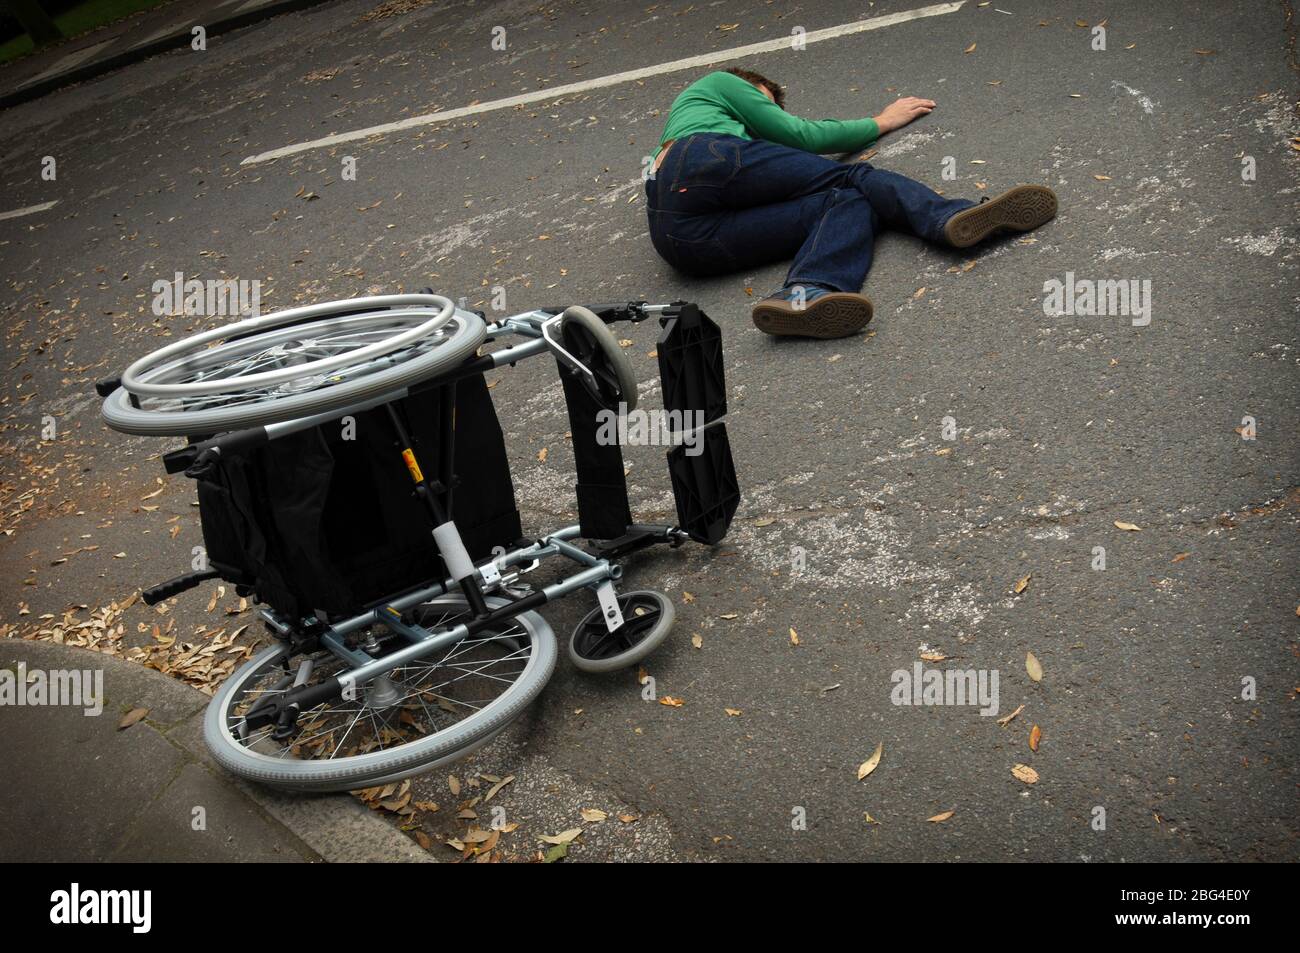 Un jeune homme se trouve sur le sol, après une chute de son fauteuil roulant  Photo Stock - Alamy